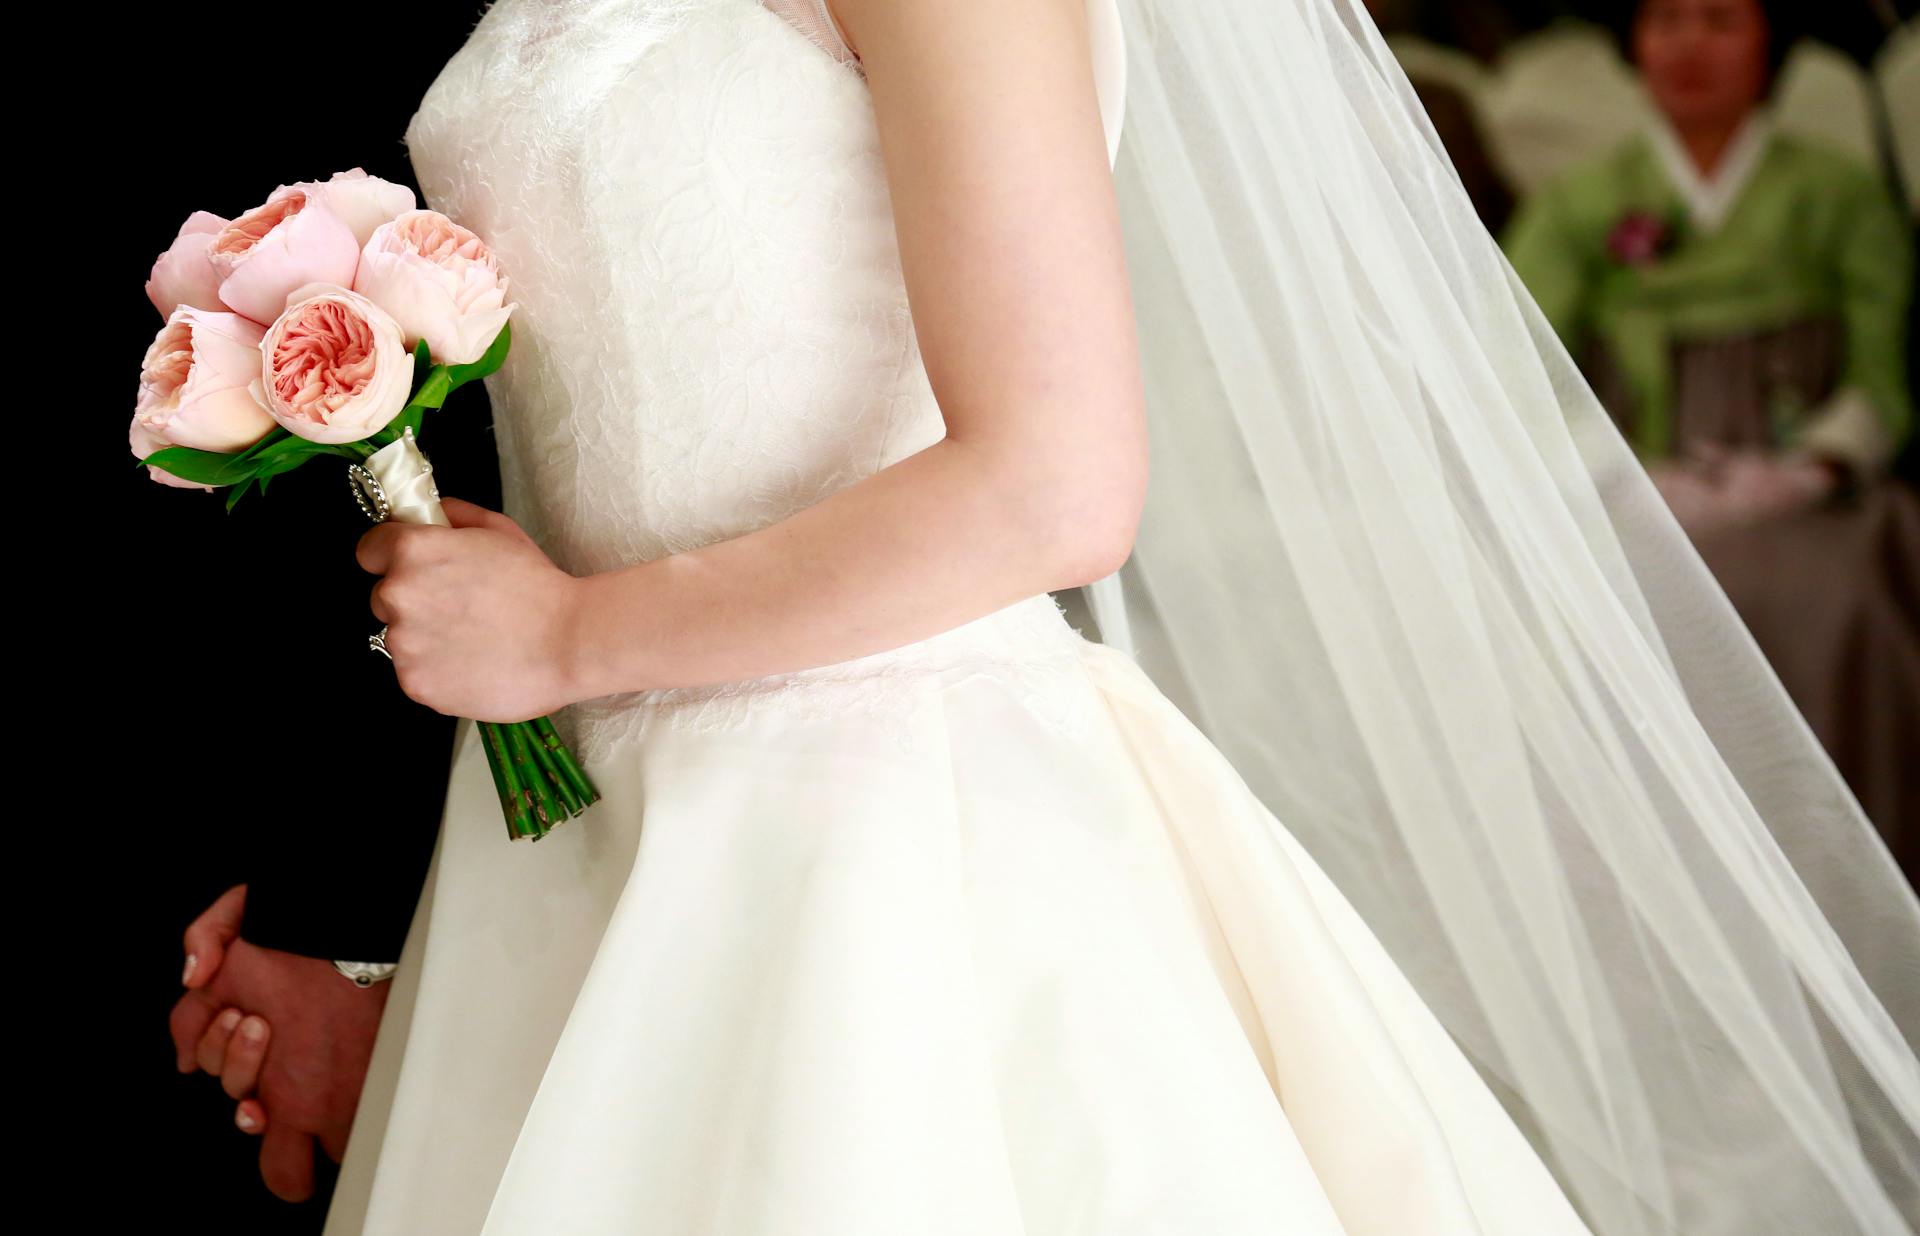 A bride holding a bouquet | Source: Pexels